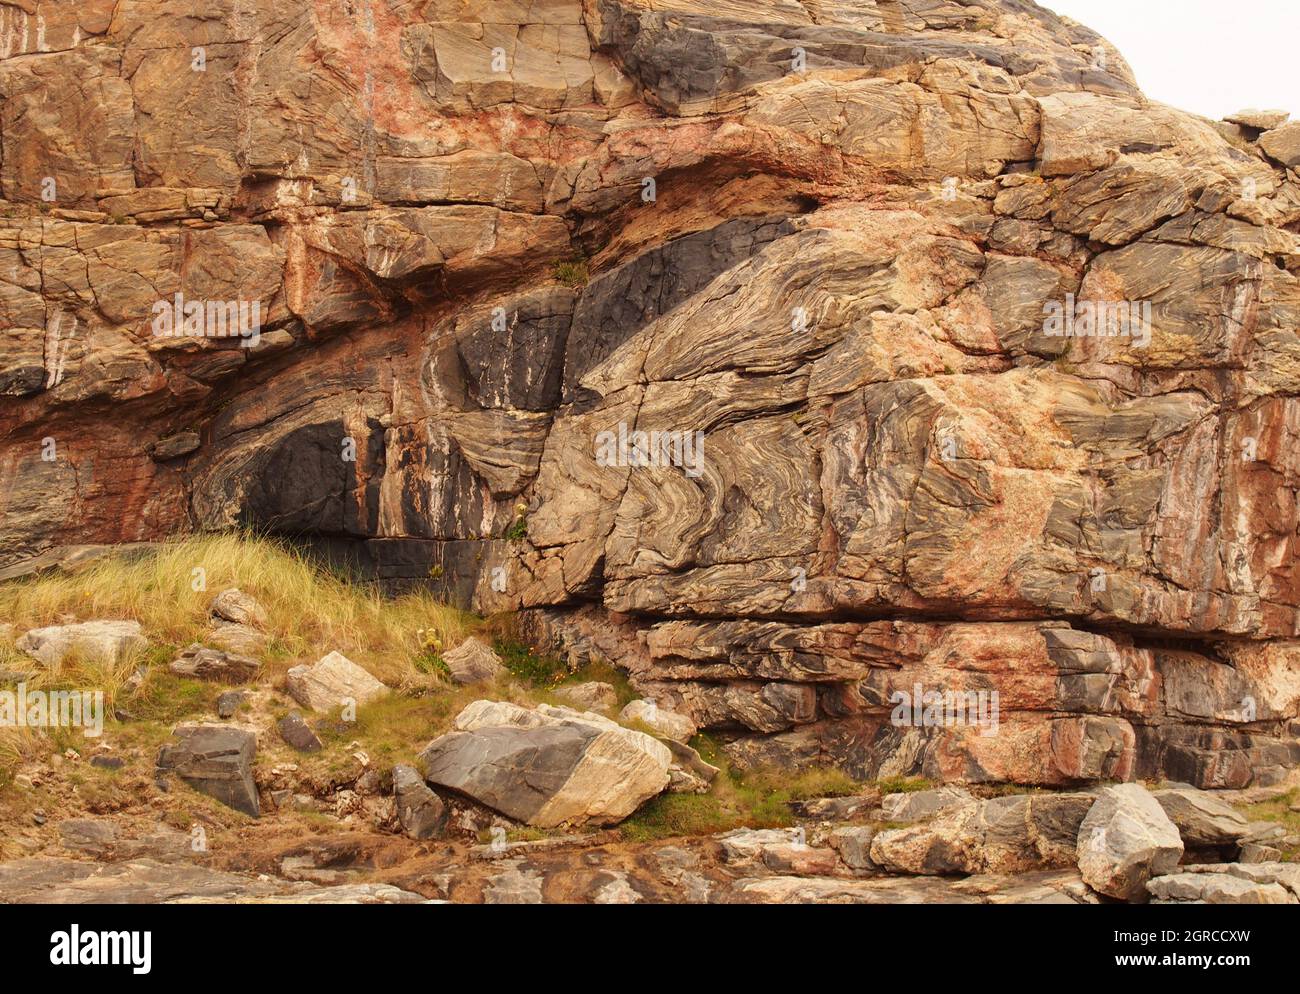 Strutture rocciose naturali a Sandwood Bay, Sutherland, Scozia, all'estremità nord della spiaggia, che mostrano l'antica roccia dei gneiss Lewisiani Foto Stock